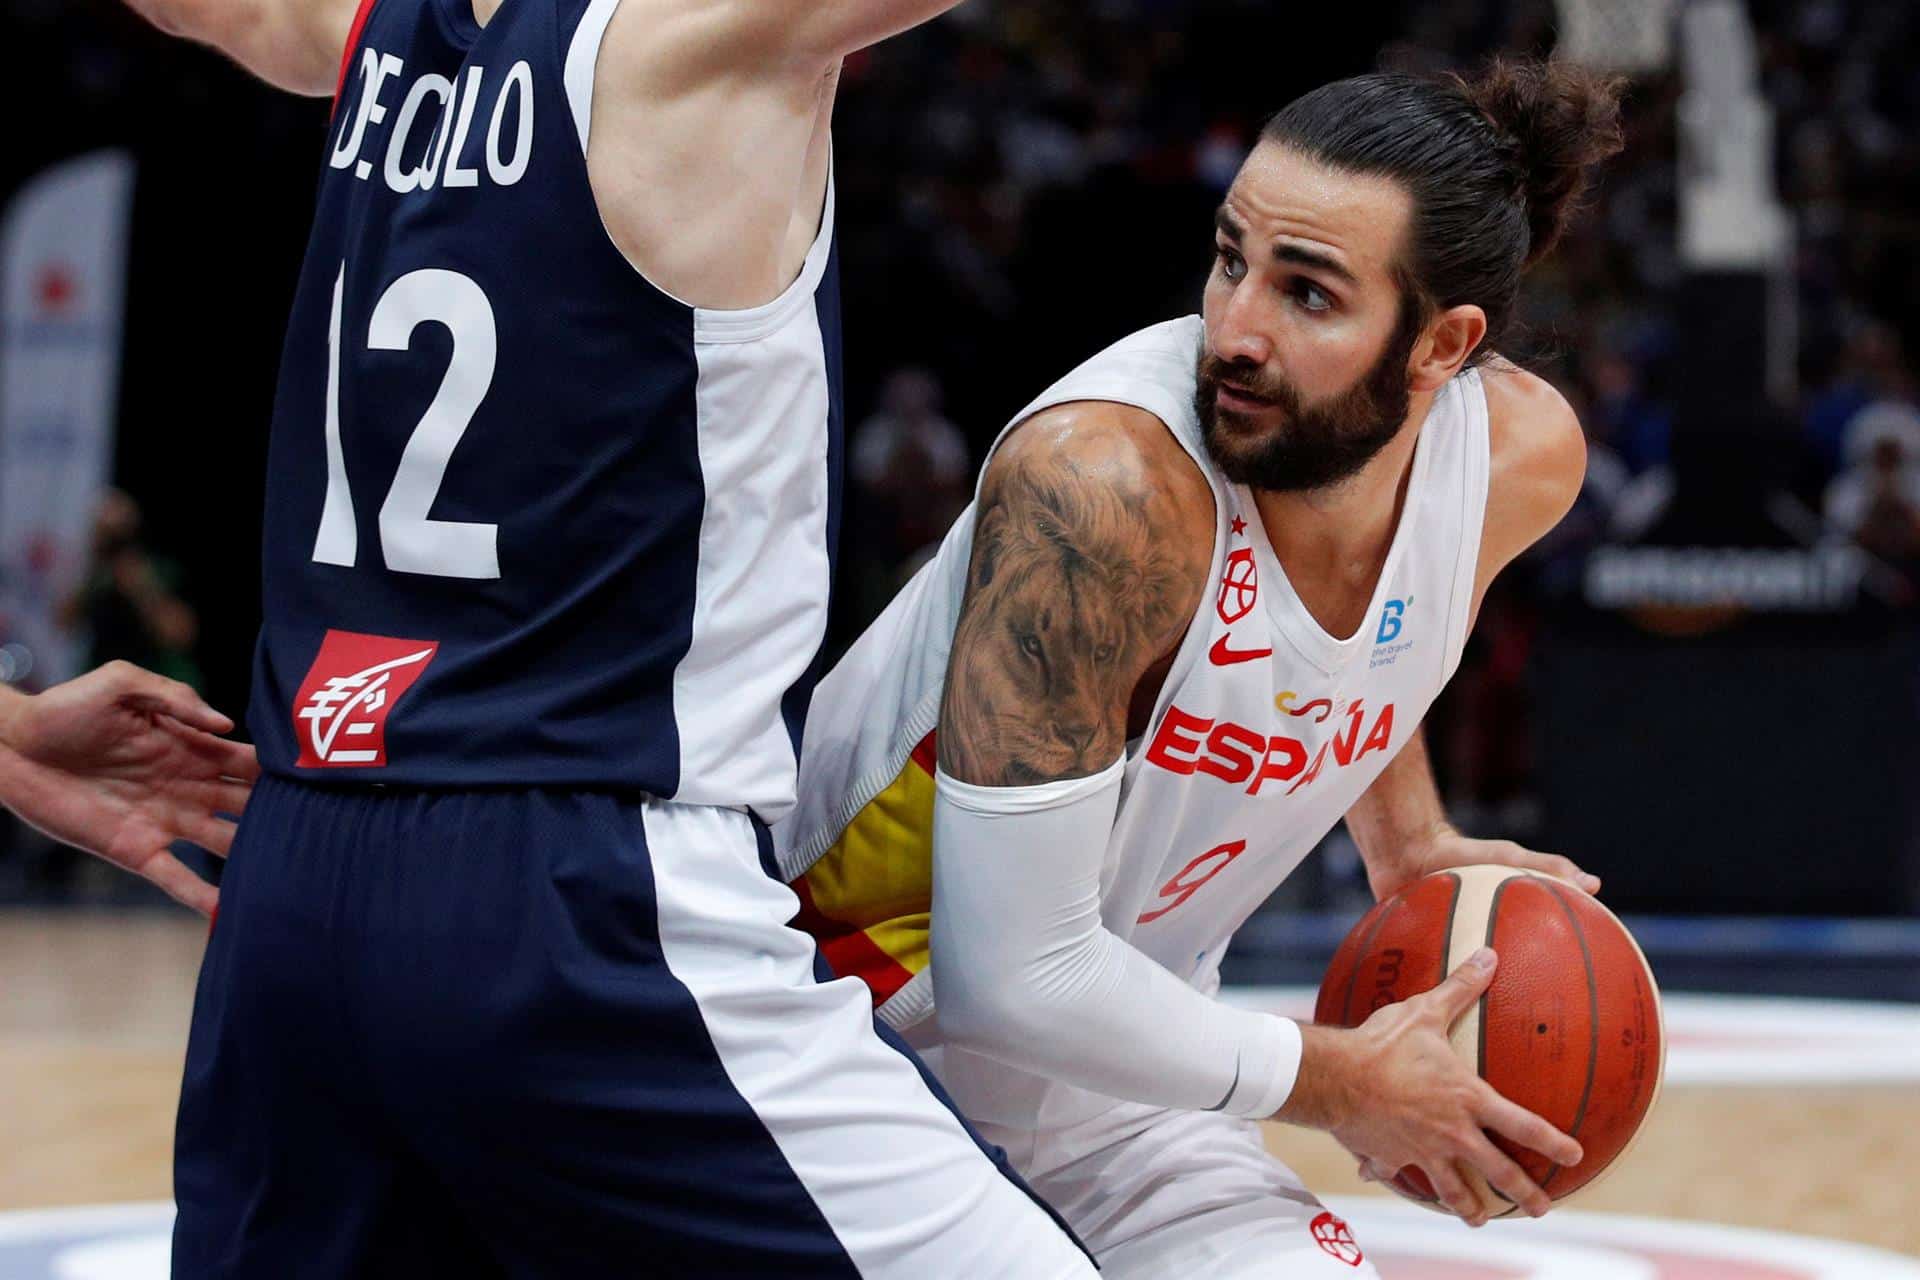 Baloncesto masculino 2021: calendario completo cuándo juega España